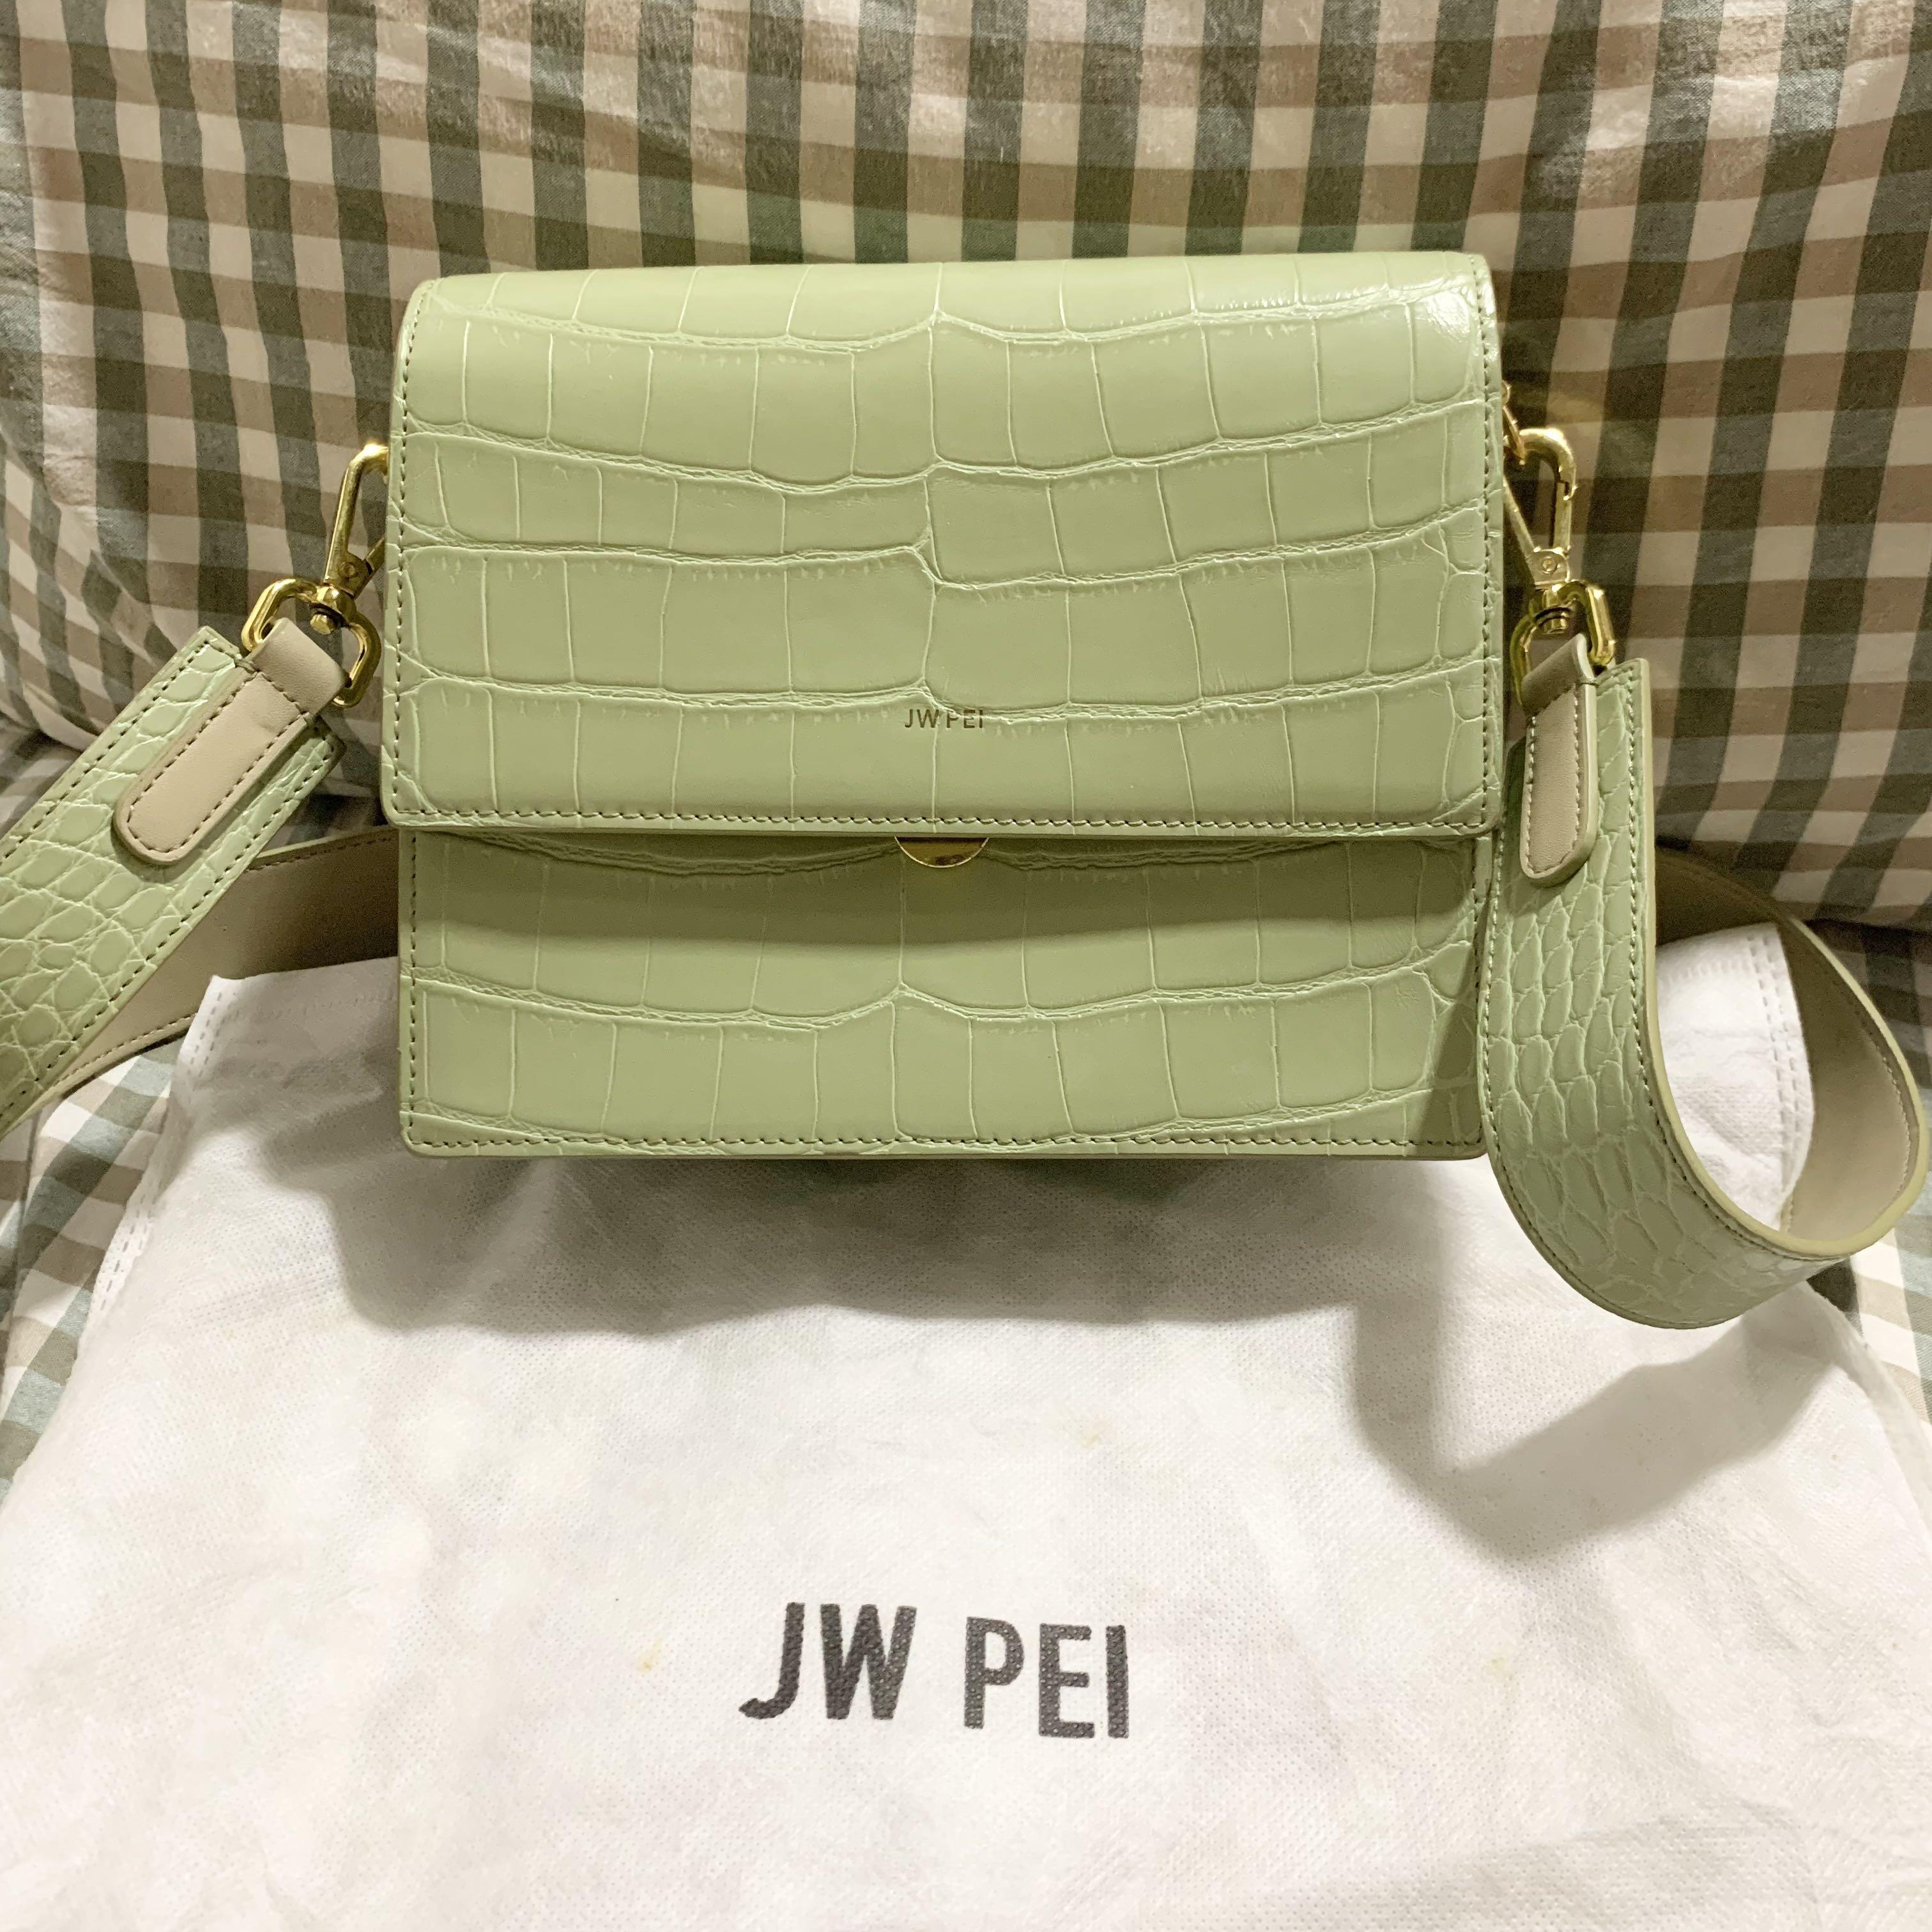 JW PEI Mini Flap Bag - Sage Green Croc